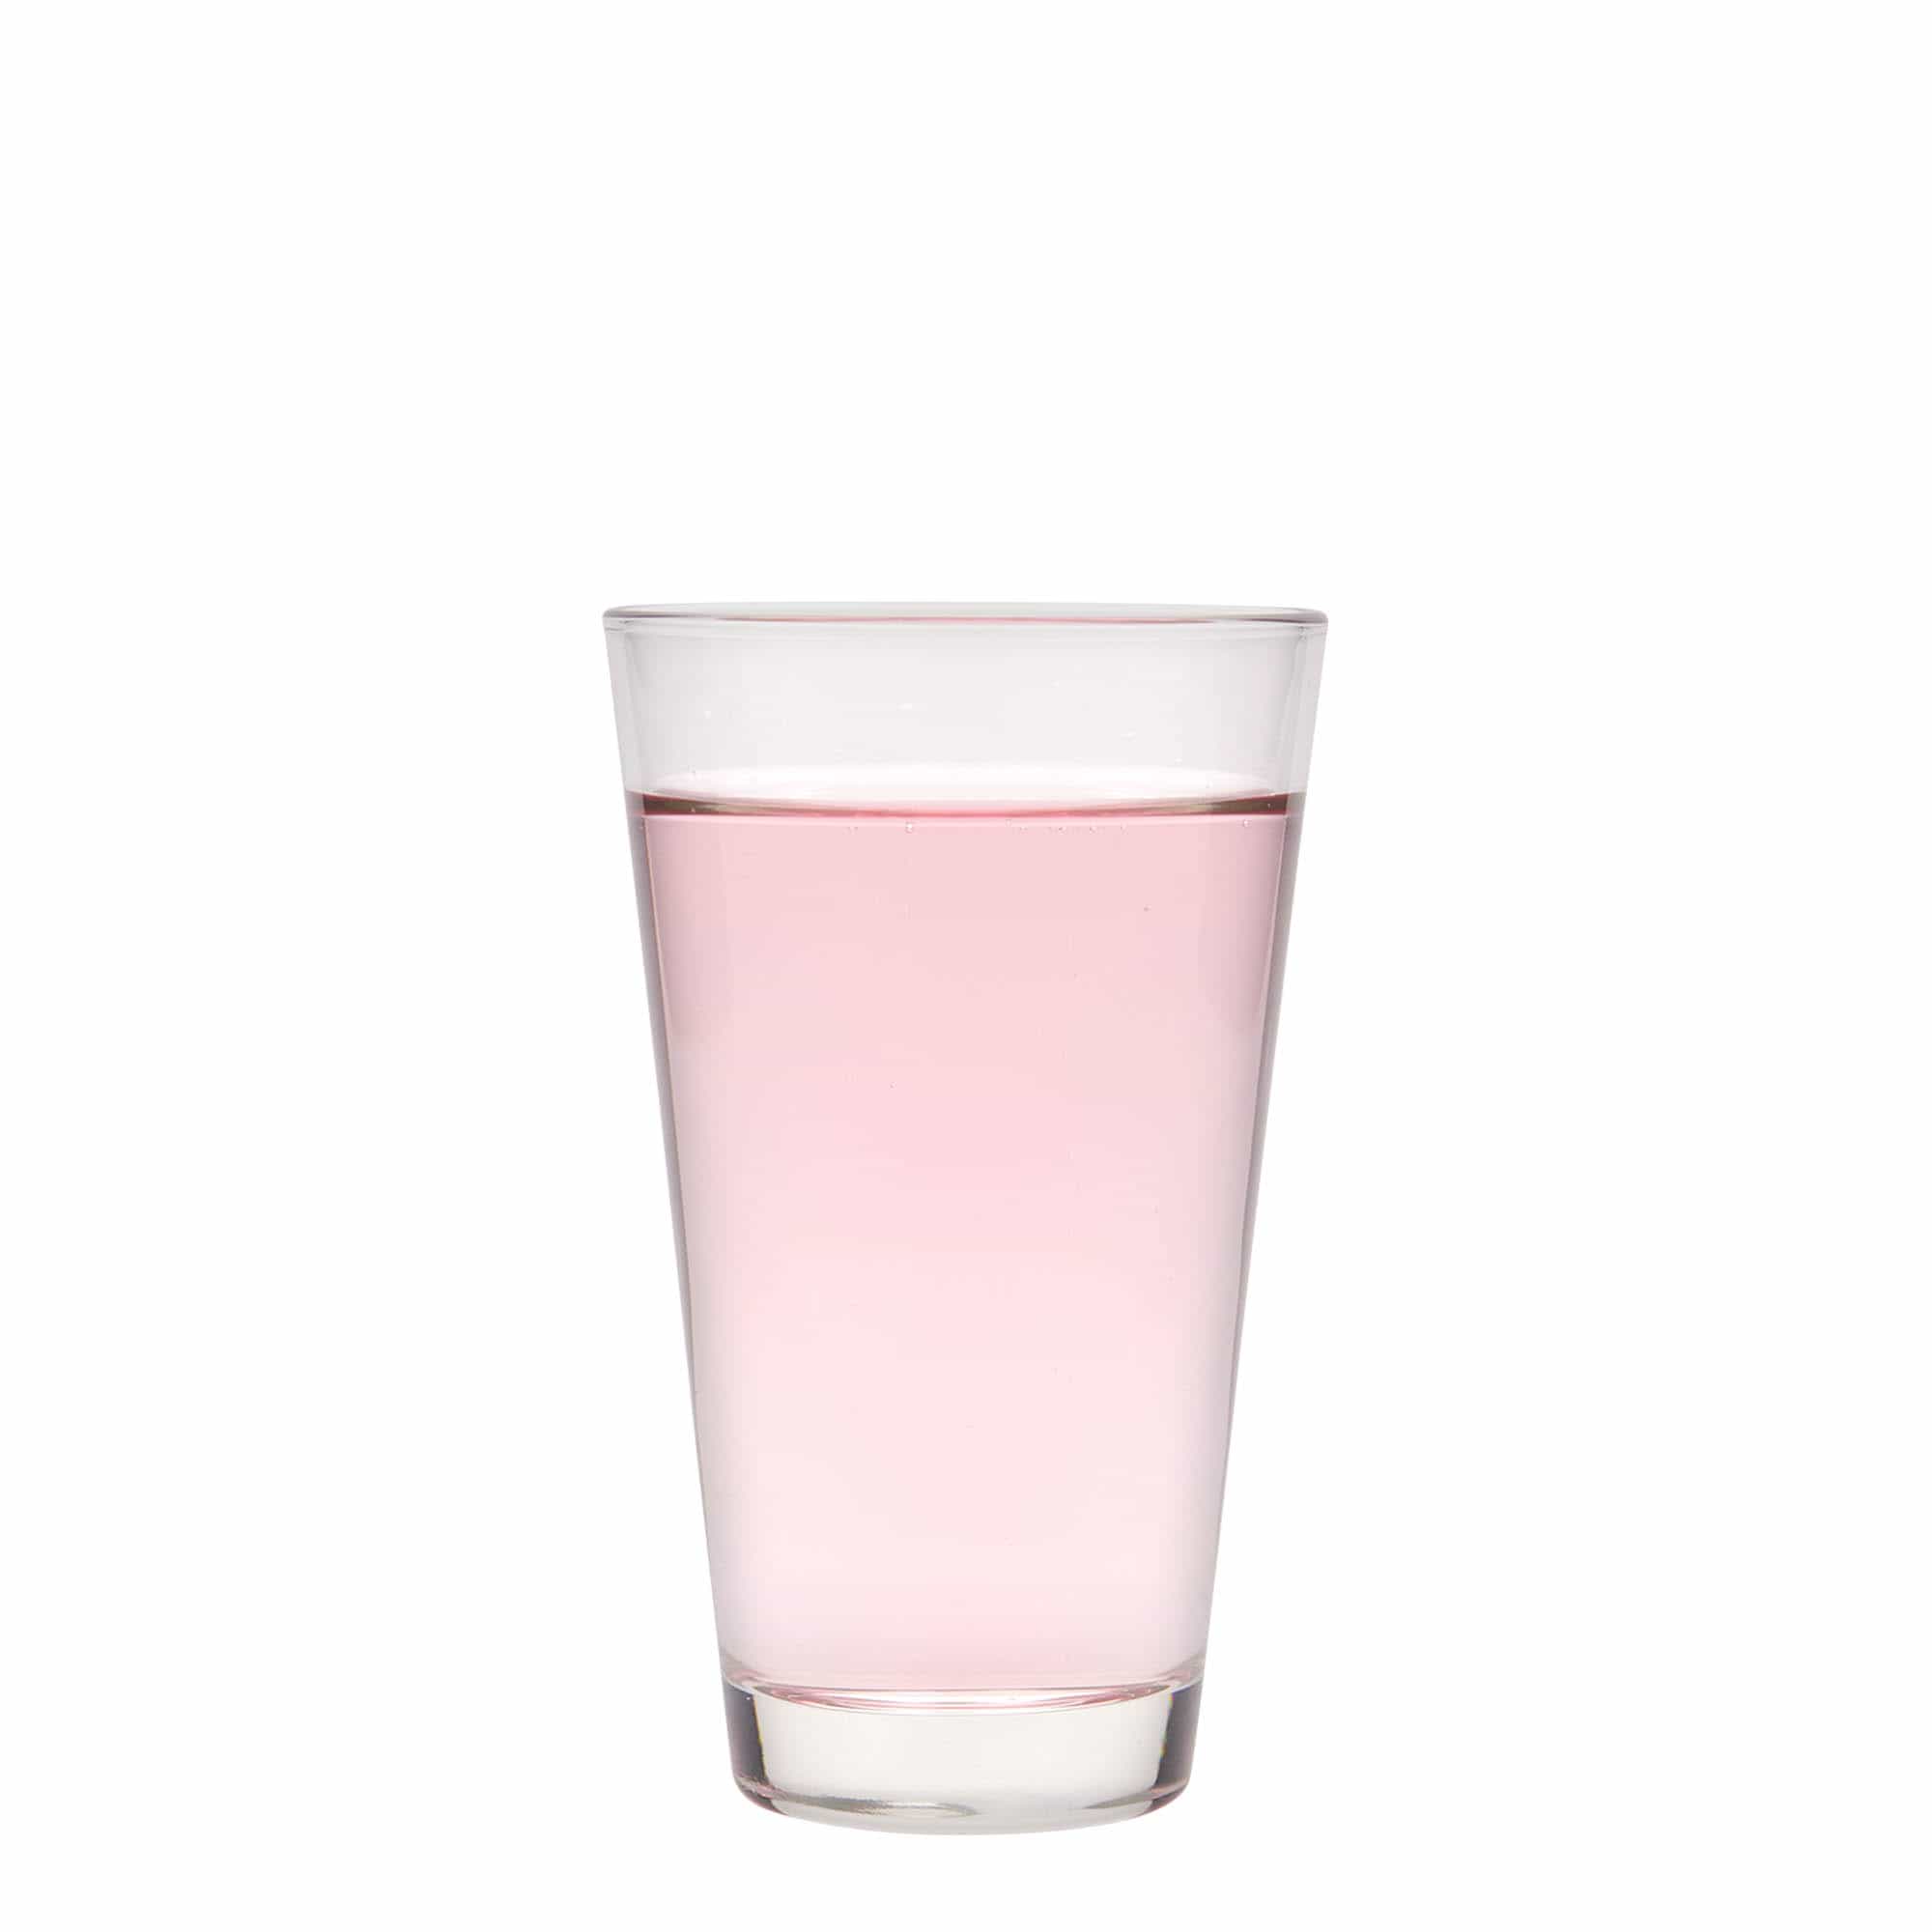 250 ml Bicchiere 'Conico', vetro